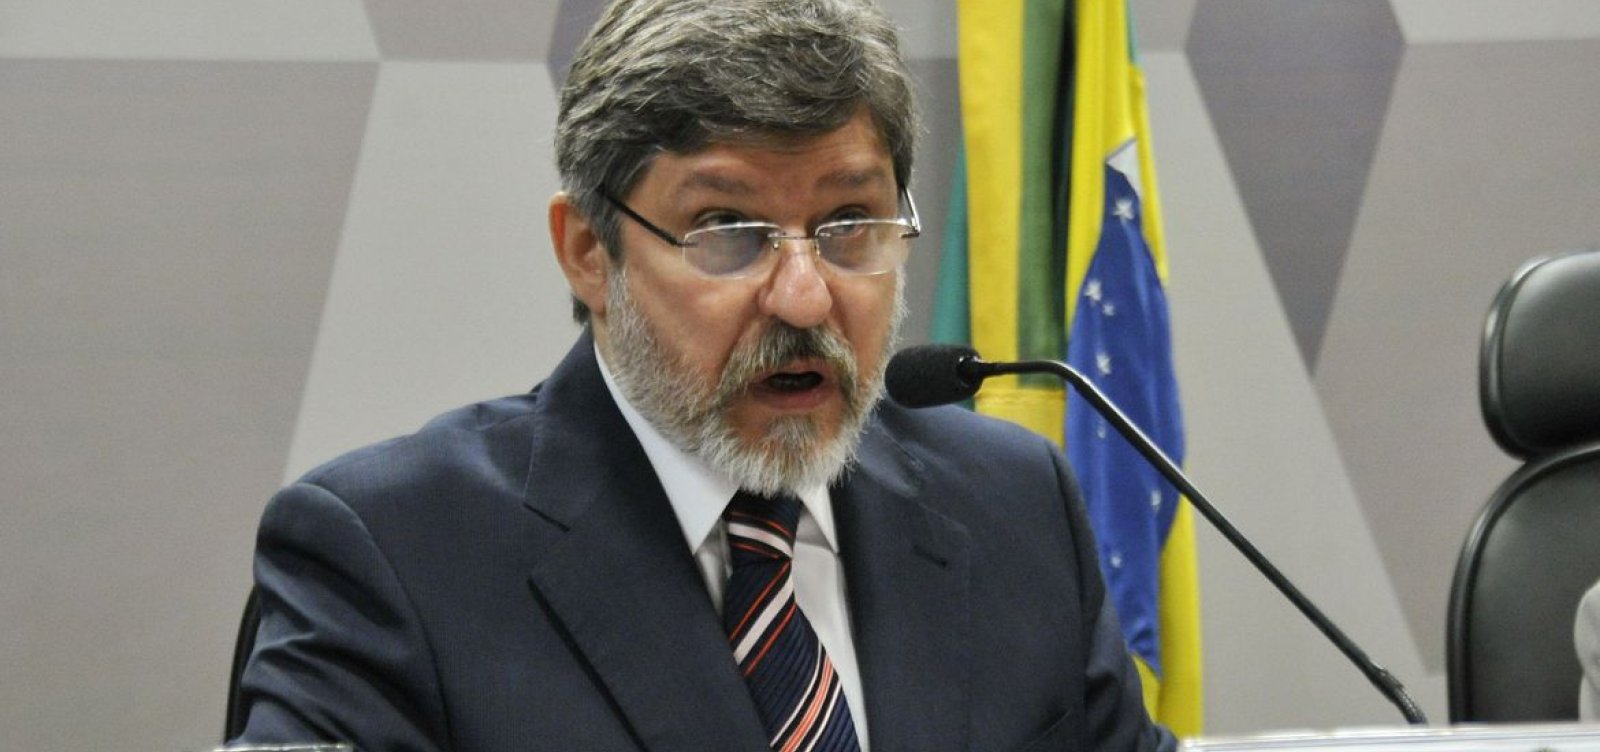 Itamaraty lamenta morte do diplomata Paulo Cesar de Oliveira Campos